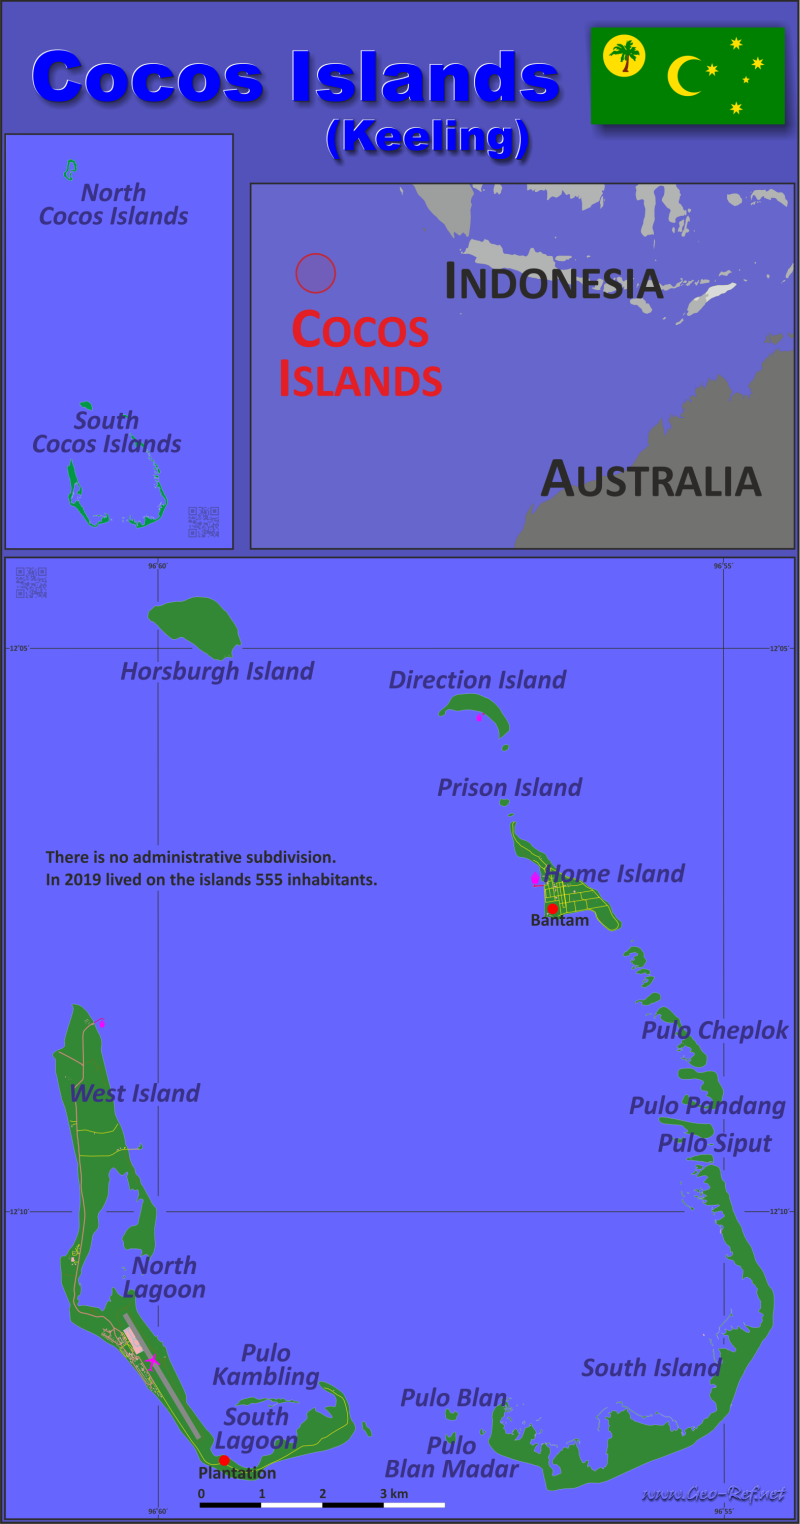 Mapa Islas Cocos Divisin administrativa - Densidad de población 2021